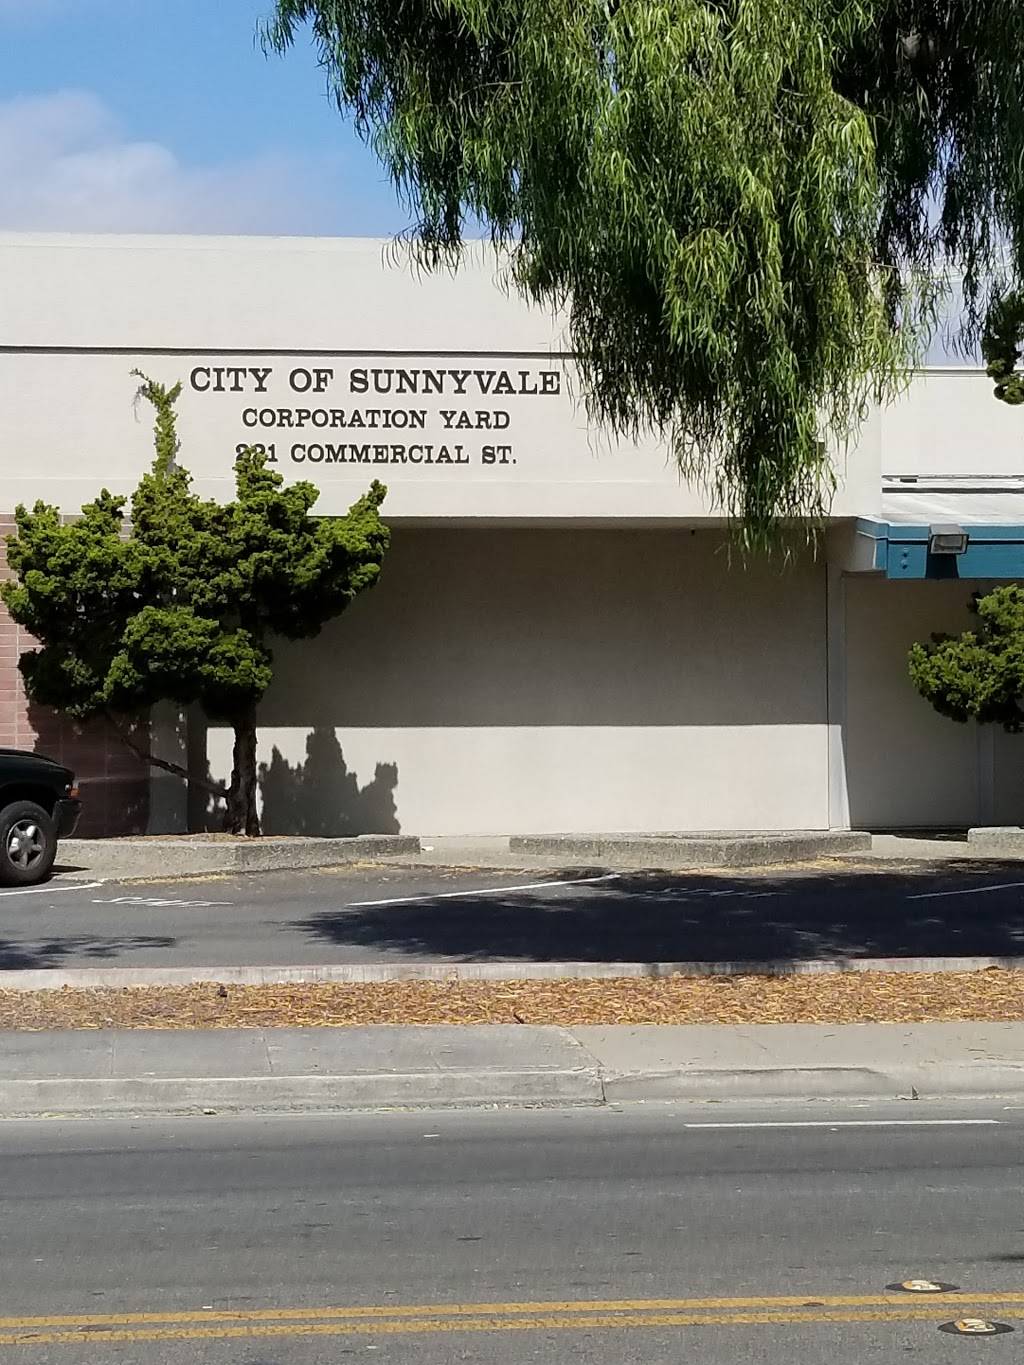 Sunnyvale Corporation Yard | 221 Commercial St, Sunnyvale, CA 94085 | Phone: (408) 730-7761